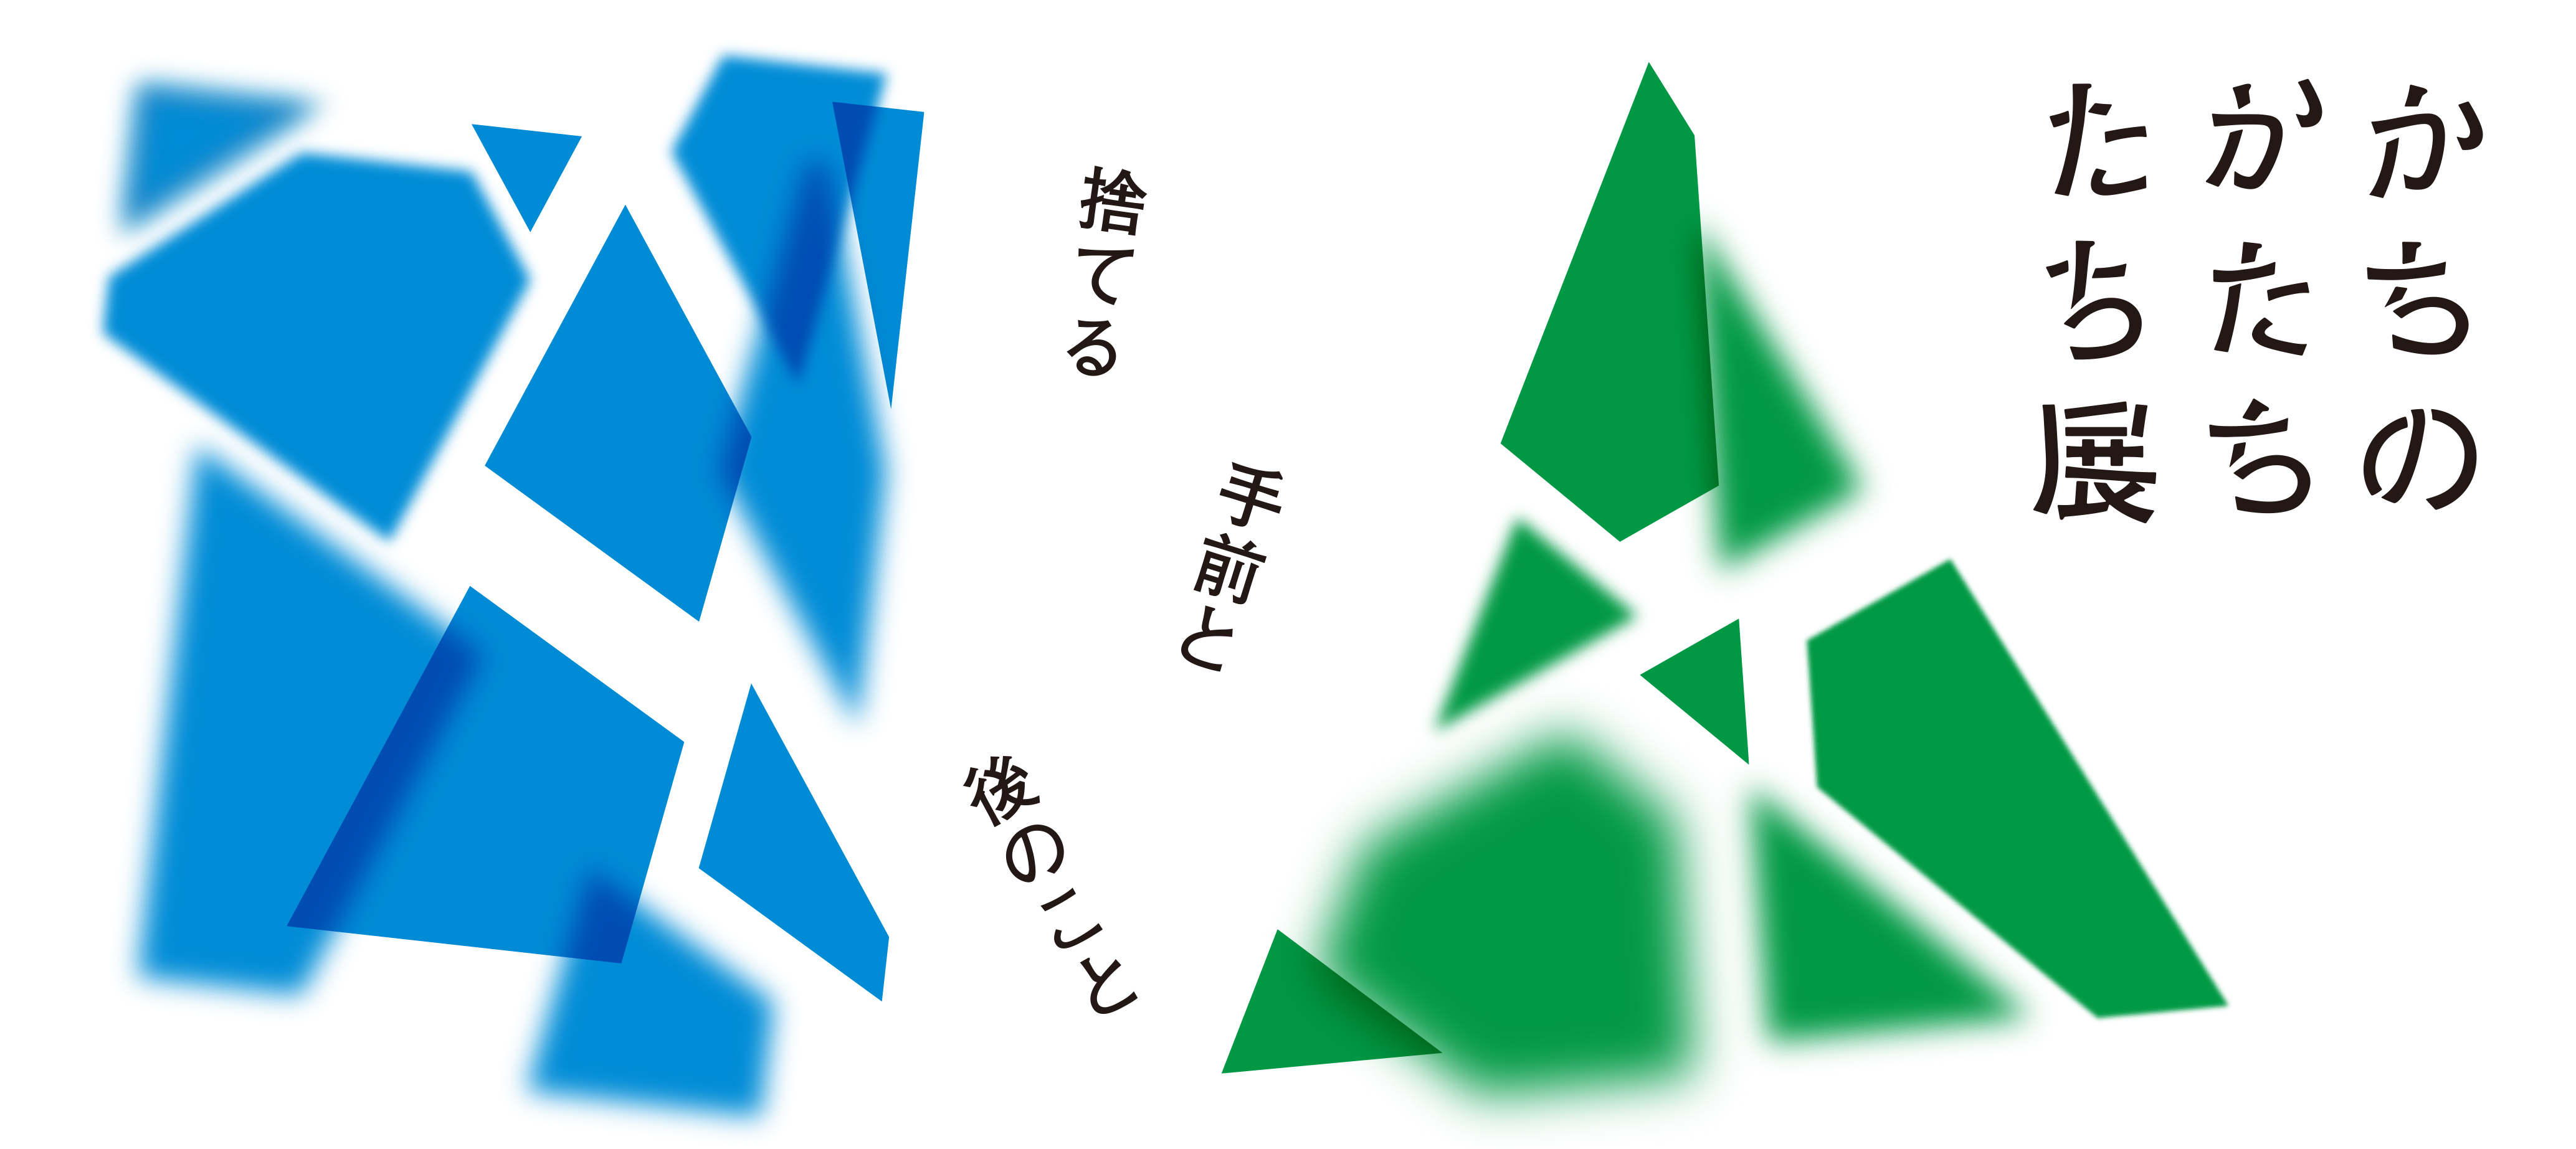 【東京ミッドタウン・デザインハブ】ゴミに対する価値観を探る企画展「かちのかたちたち展ー捨てる手前と後のこと」を12月5日から開催